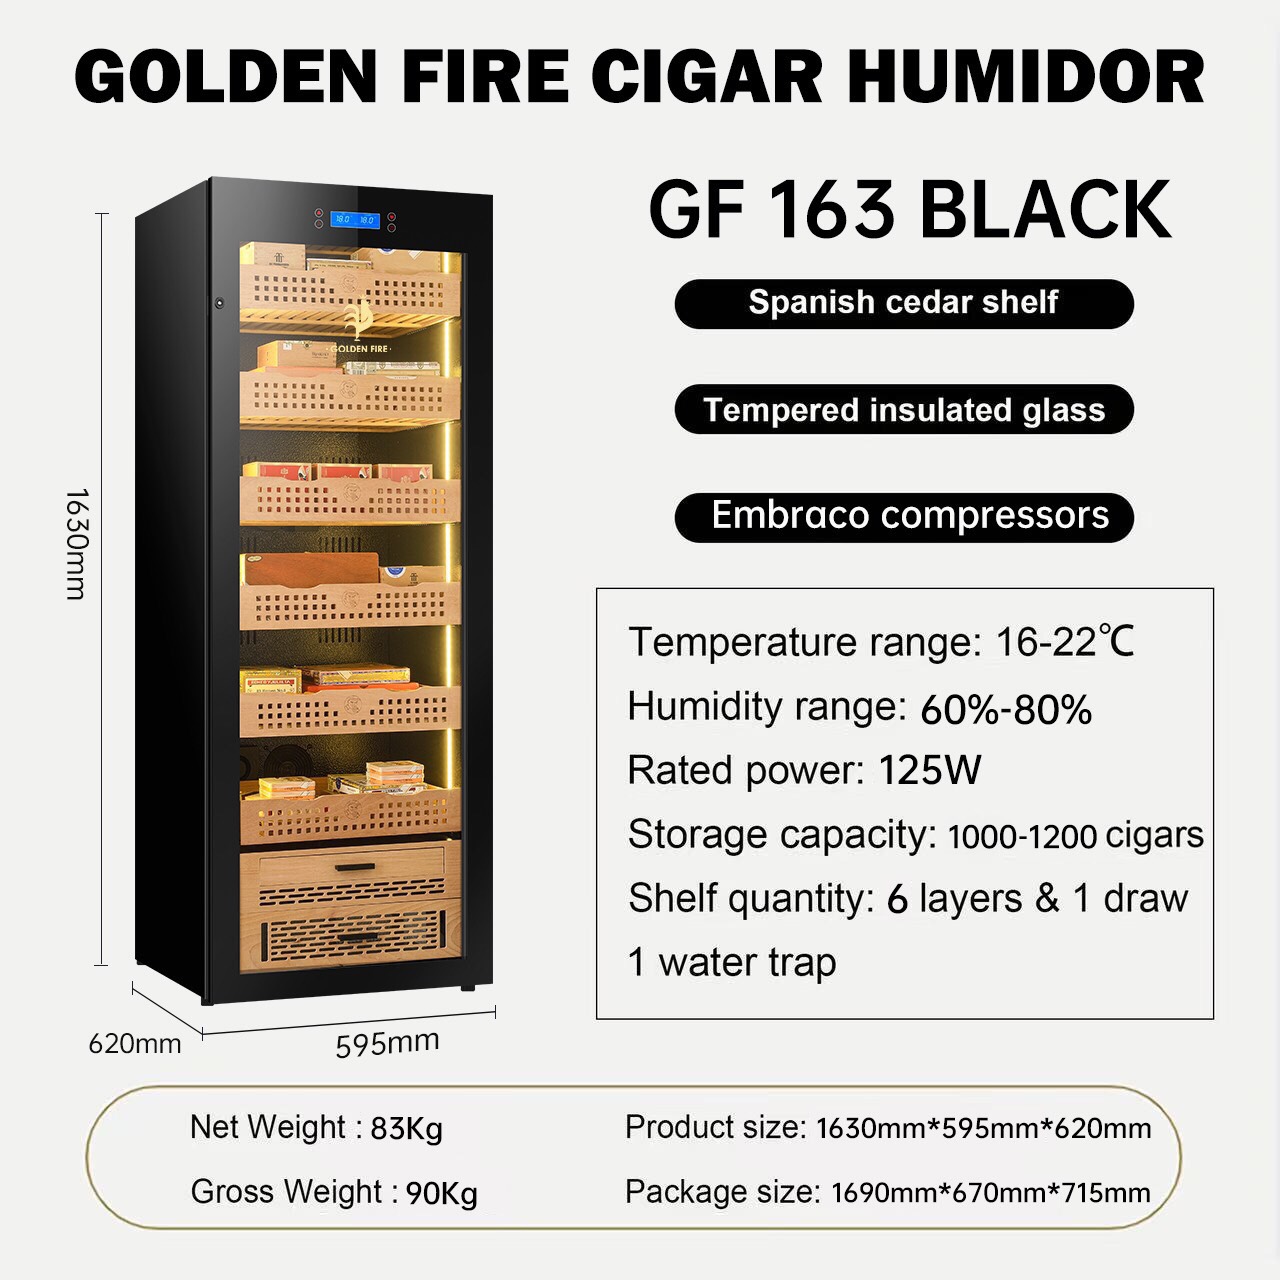 TỦ BẢO QUẢN CIGAR GOLDEN FIRE GF-163